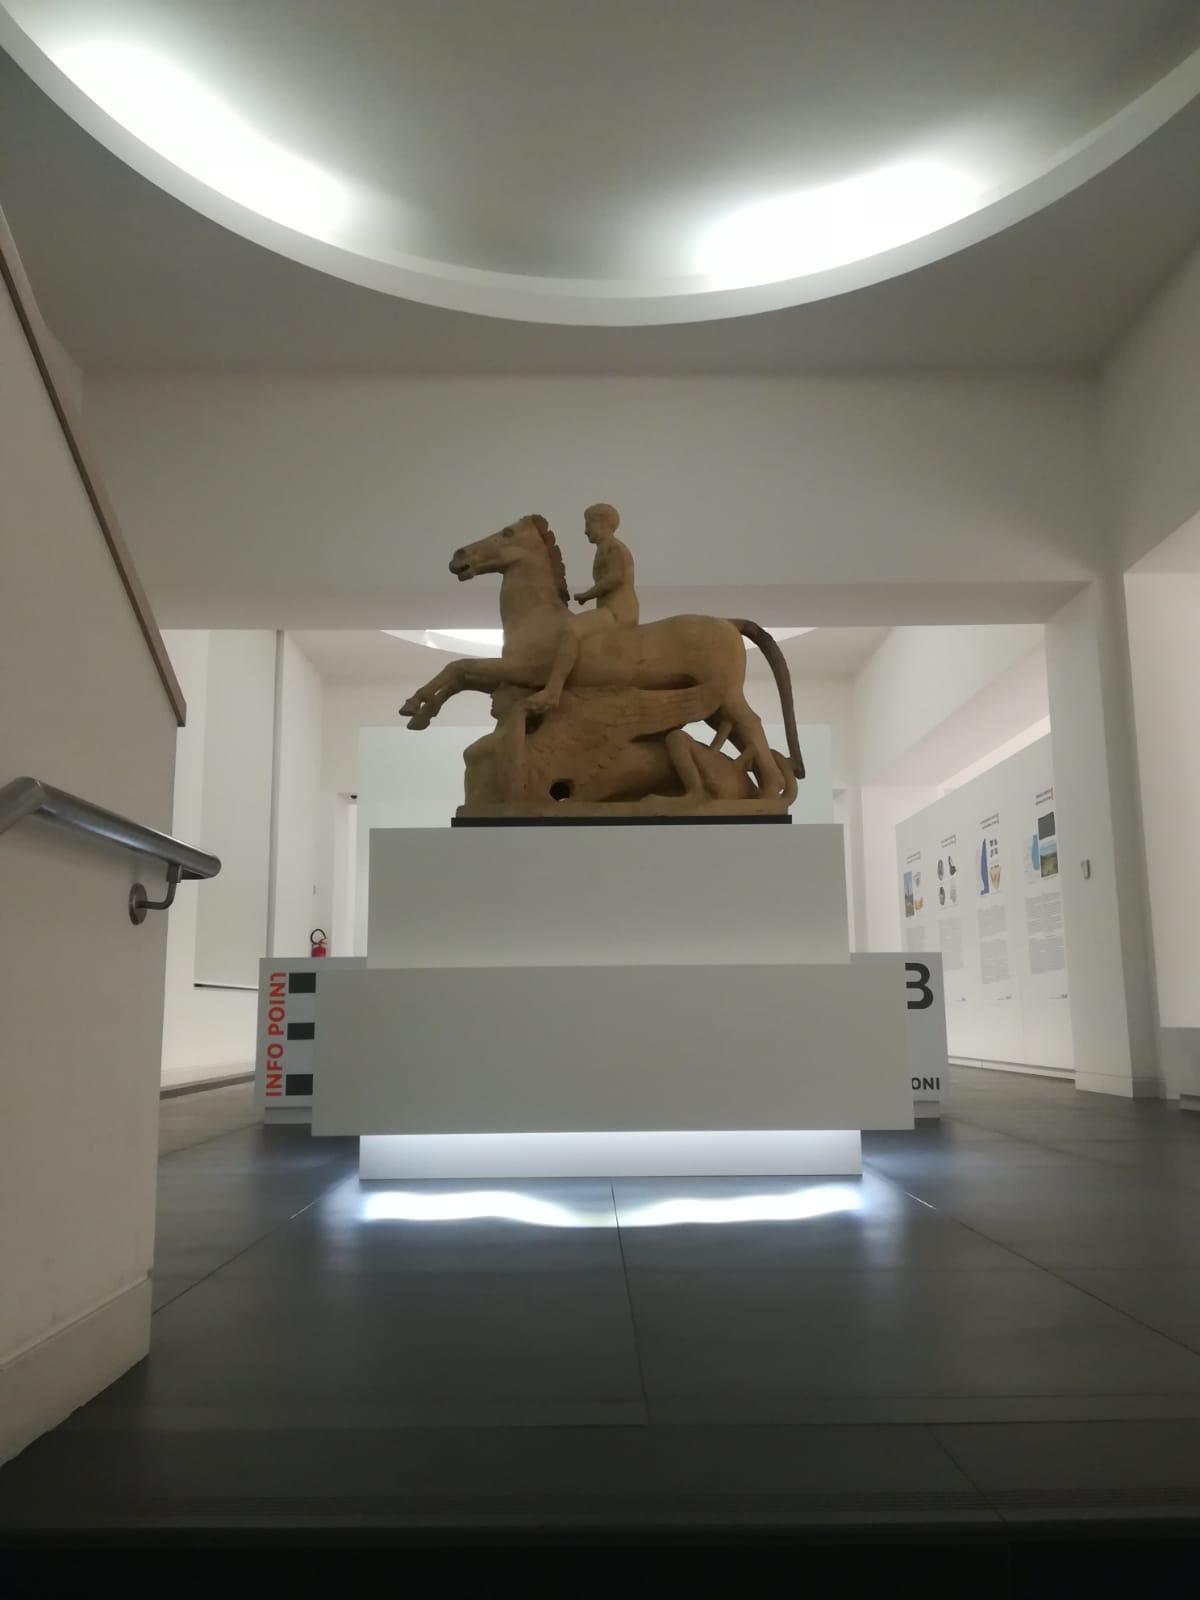 L’impegno del museo di Reggio per un’offerta espositiva dinamica